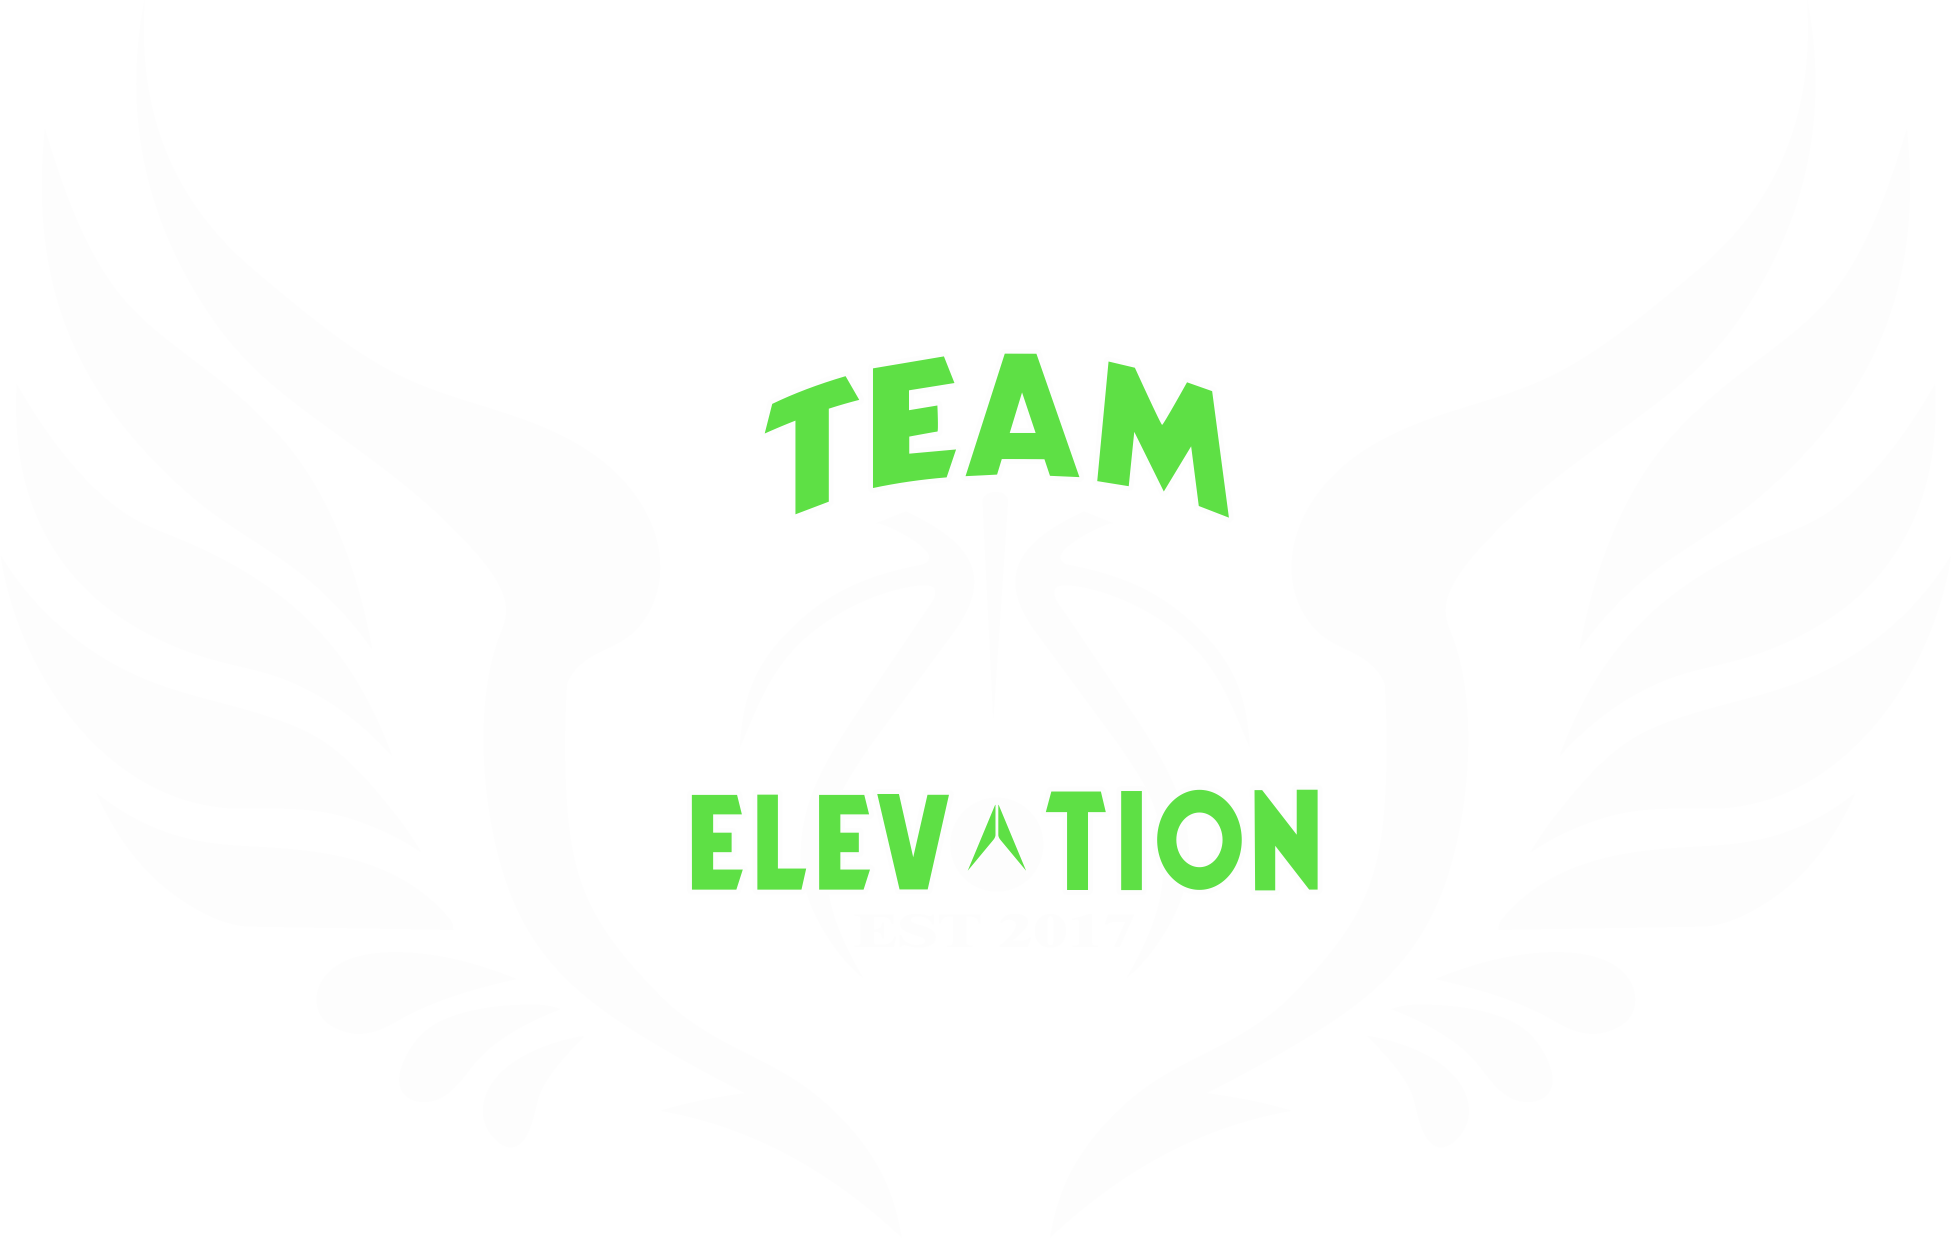 Team Elevation